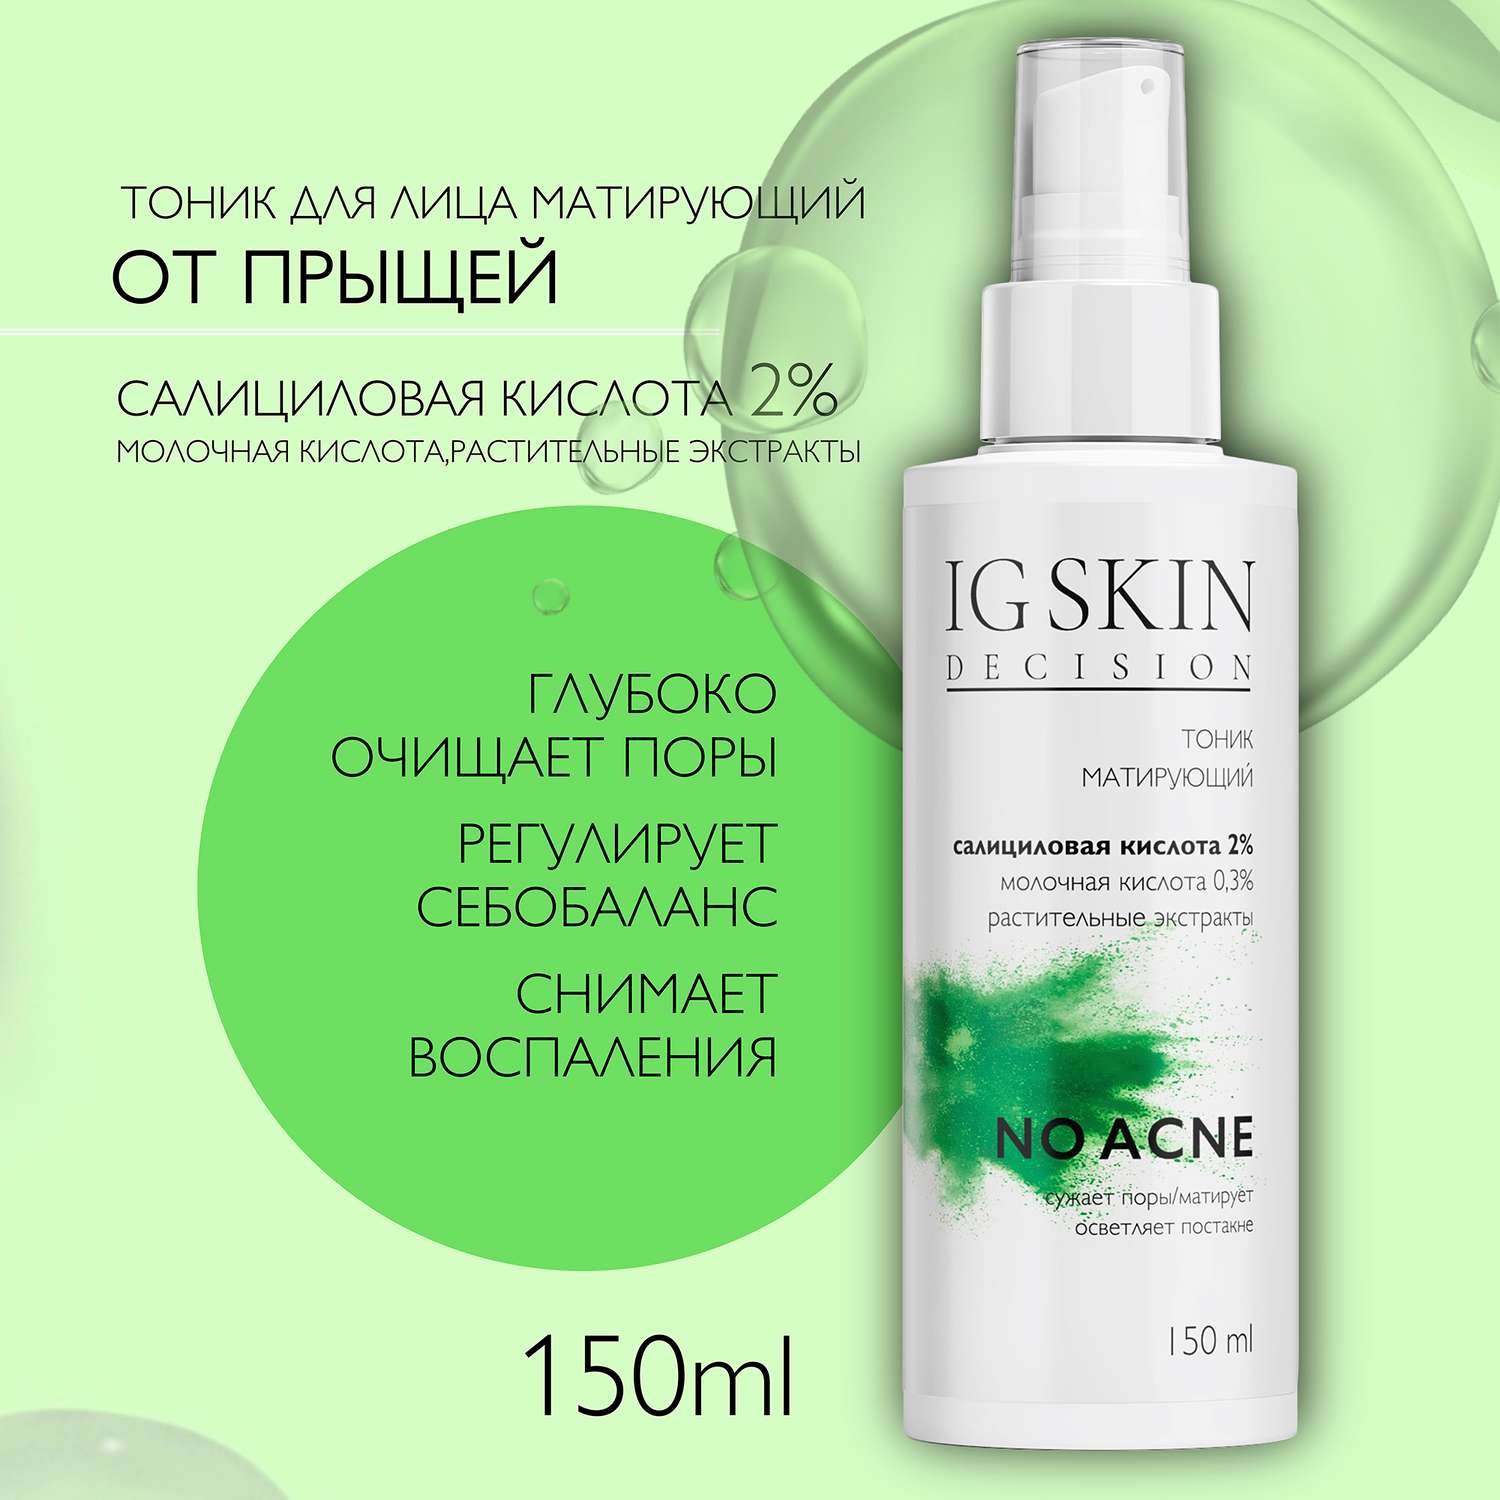 Тоник для лица IG SKIN Decision для проблемной кожи с салициловой кислотой 2% и молочной кислотой 0.3% - фото 2